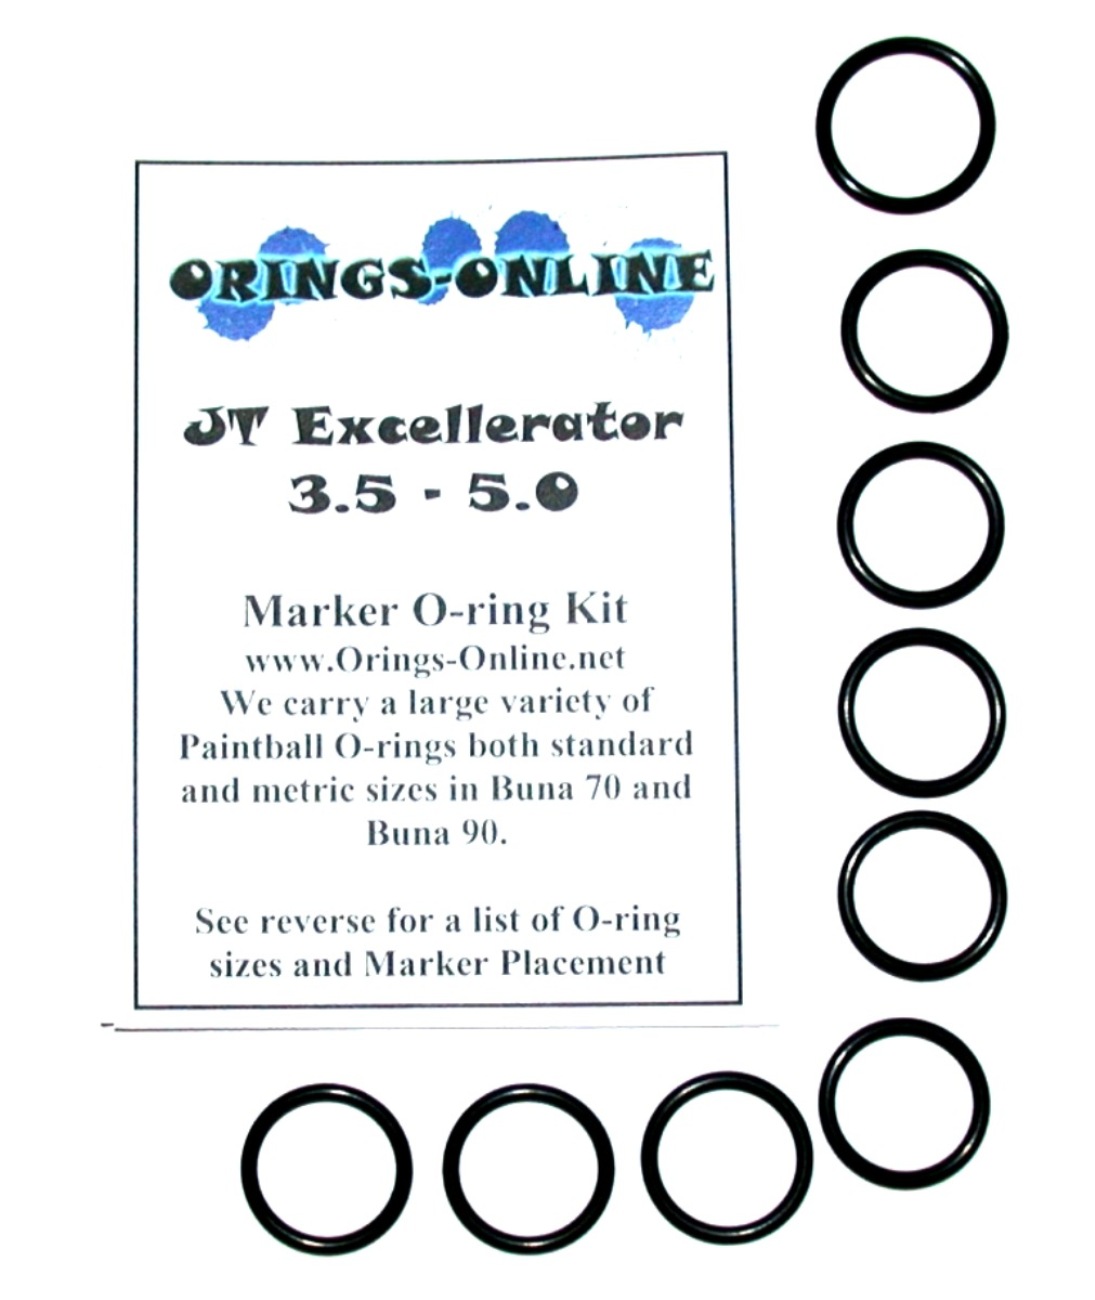 JT Excellerator 3.5 - 5.0 Marker O-ring Kit